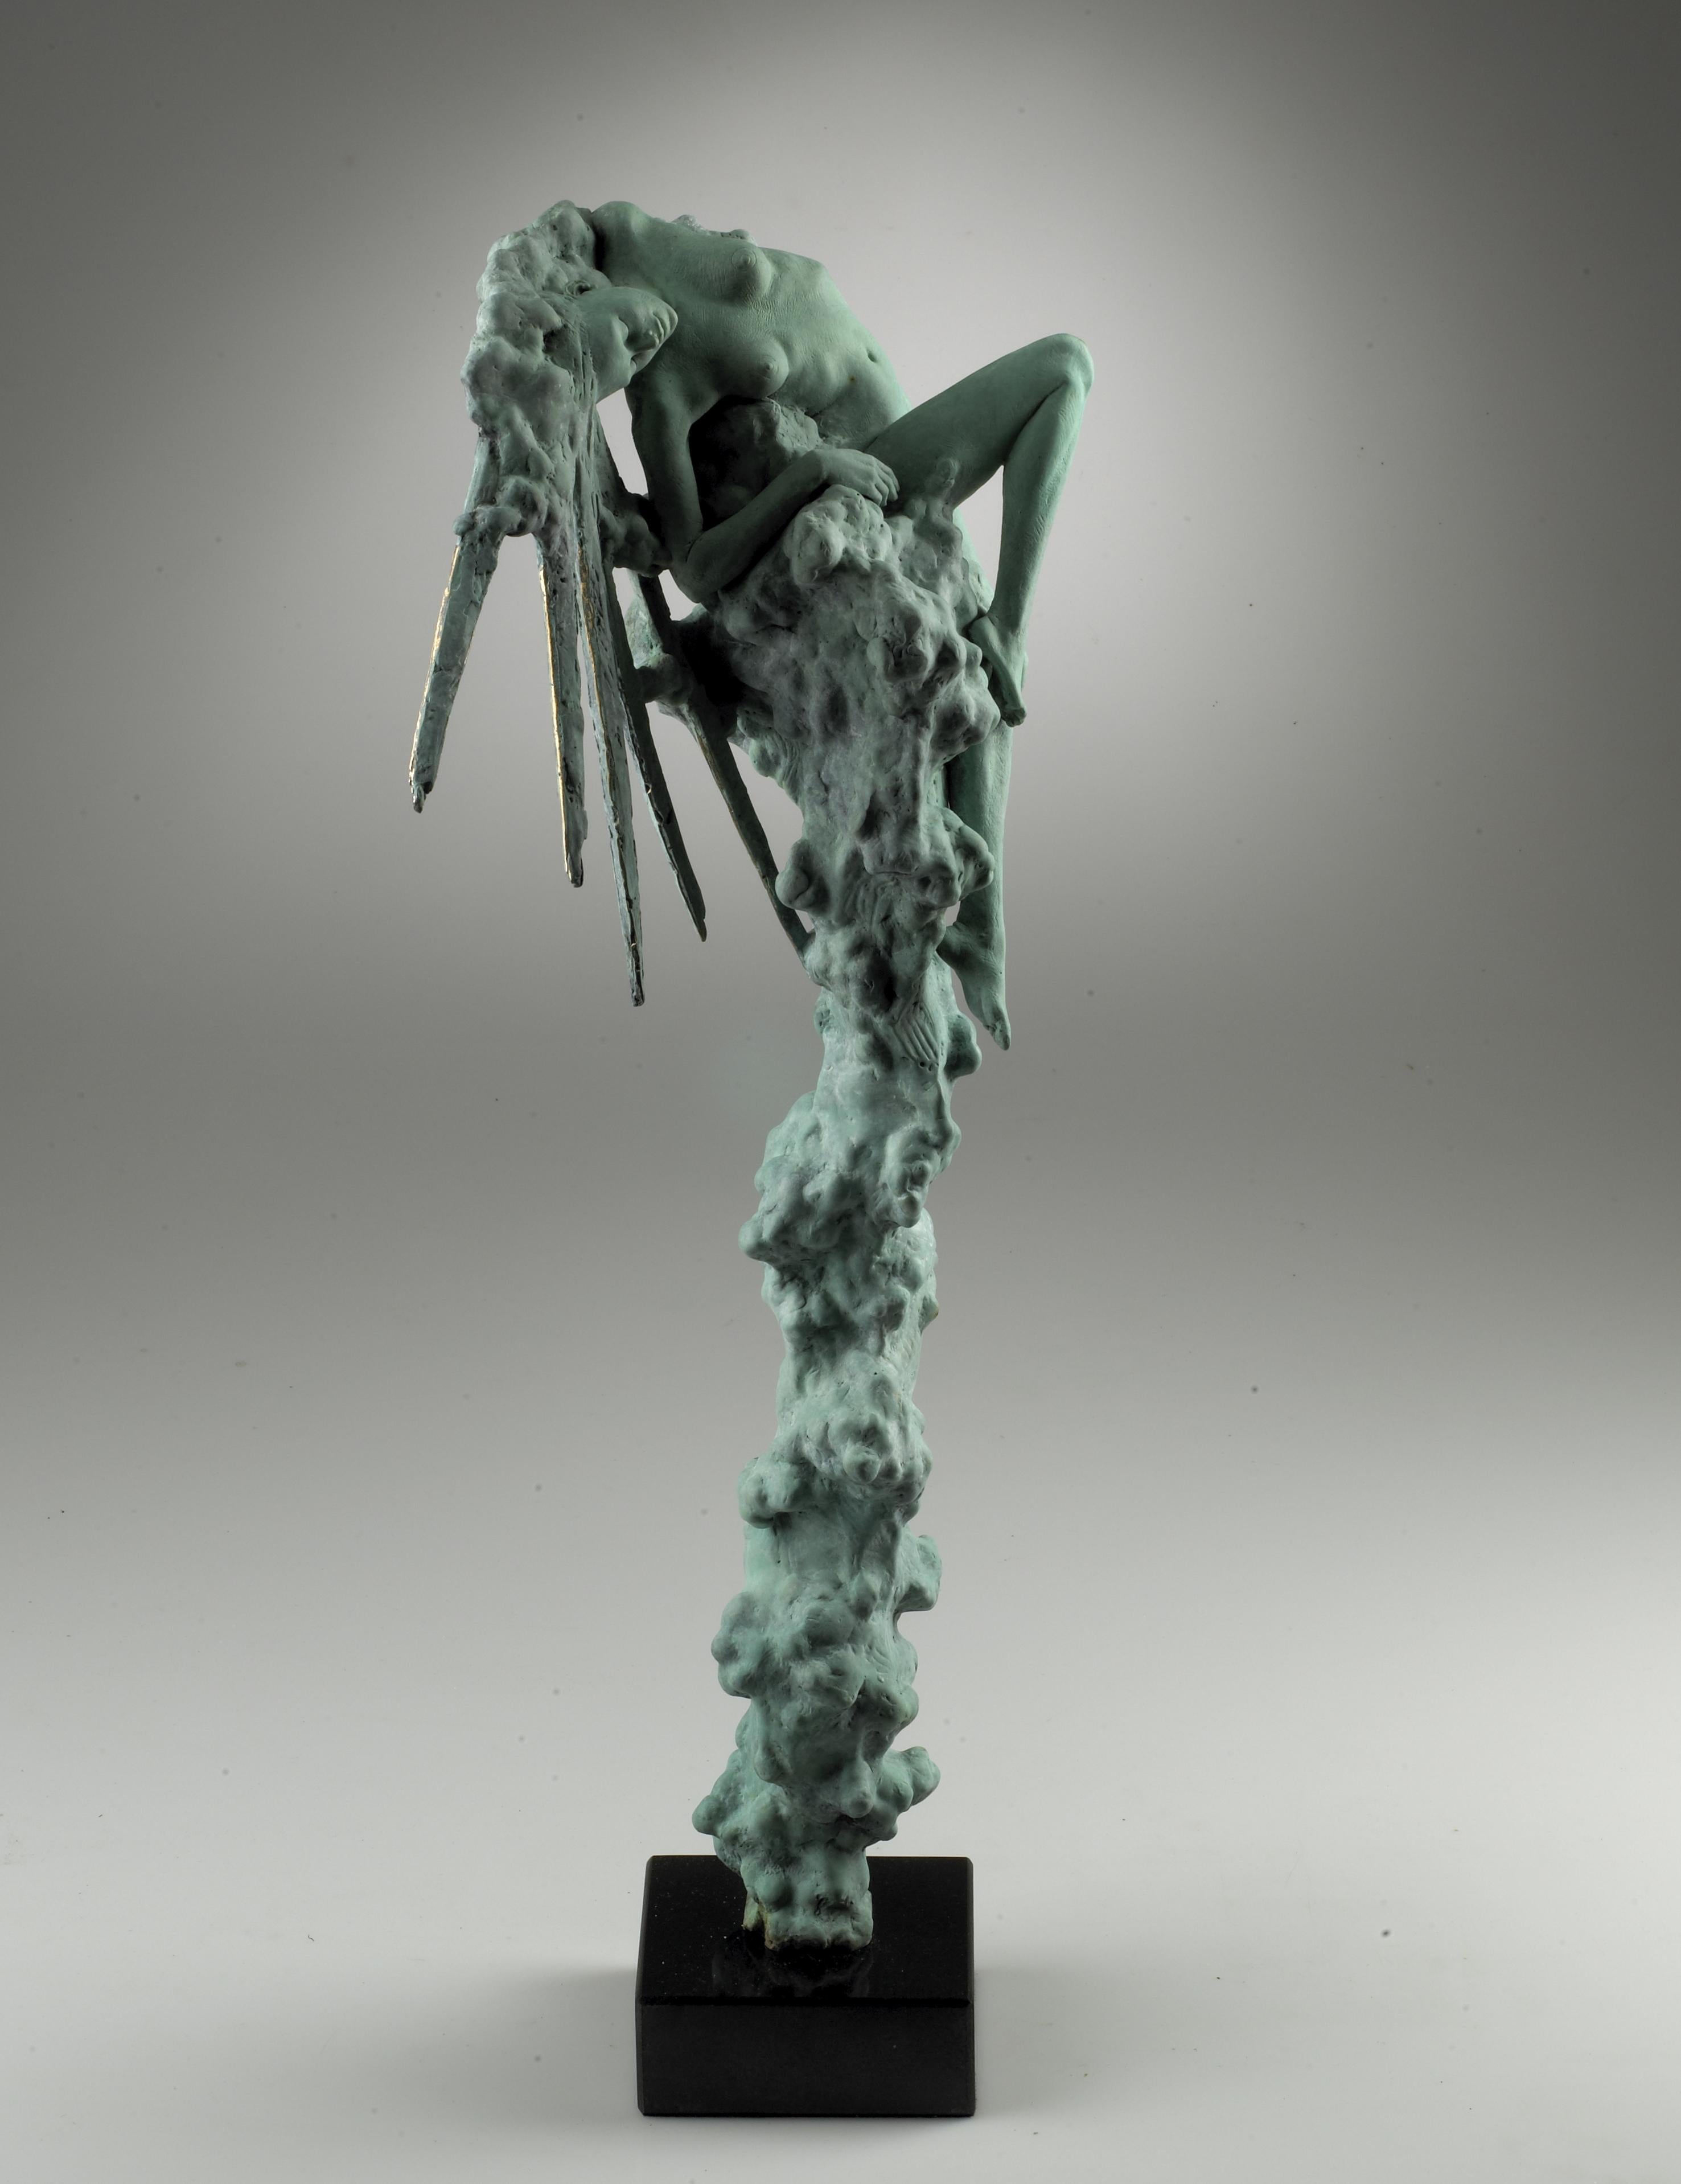 Zeitgenössische figurative Skulptur einer Frau auf einer Wolke, „Sunburst“  – Sculpture von Carl Payne